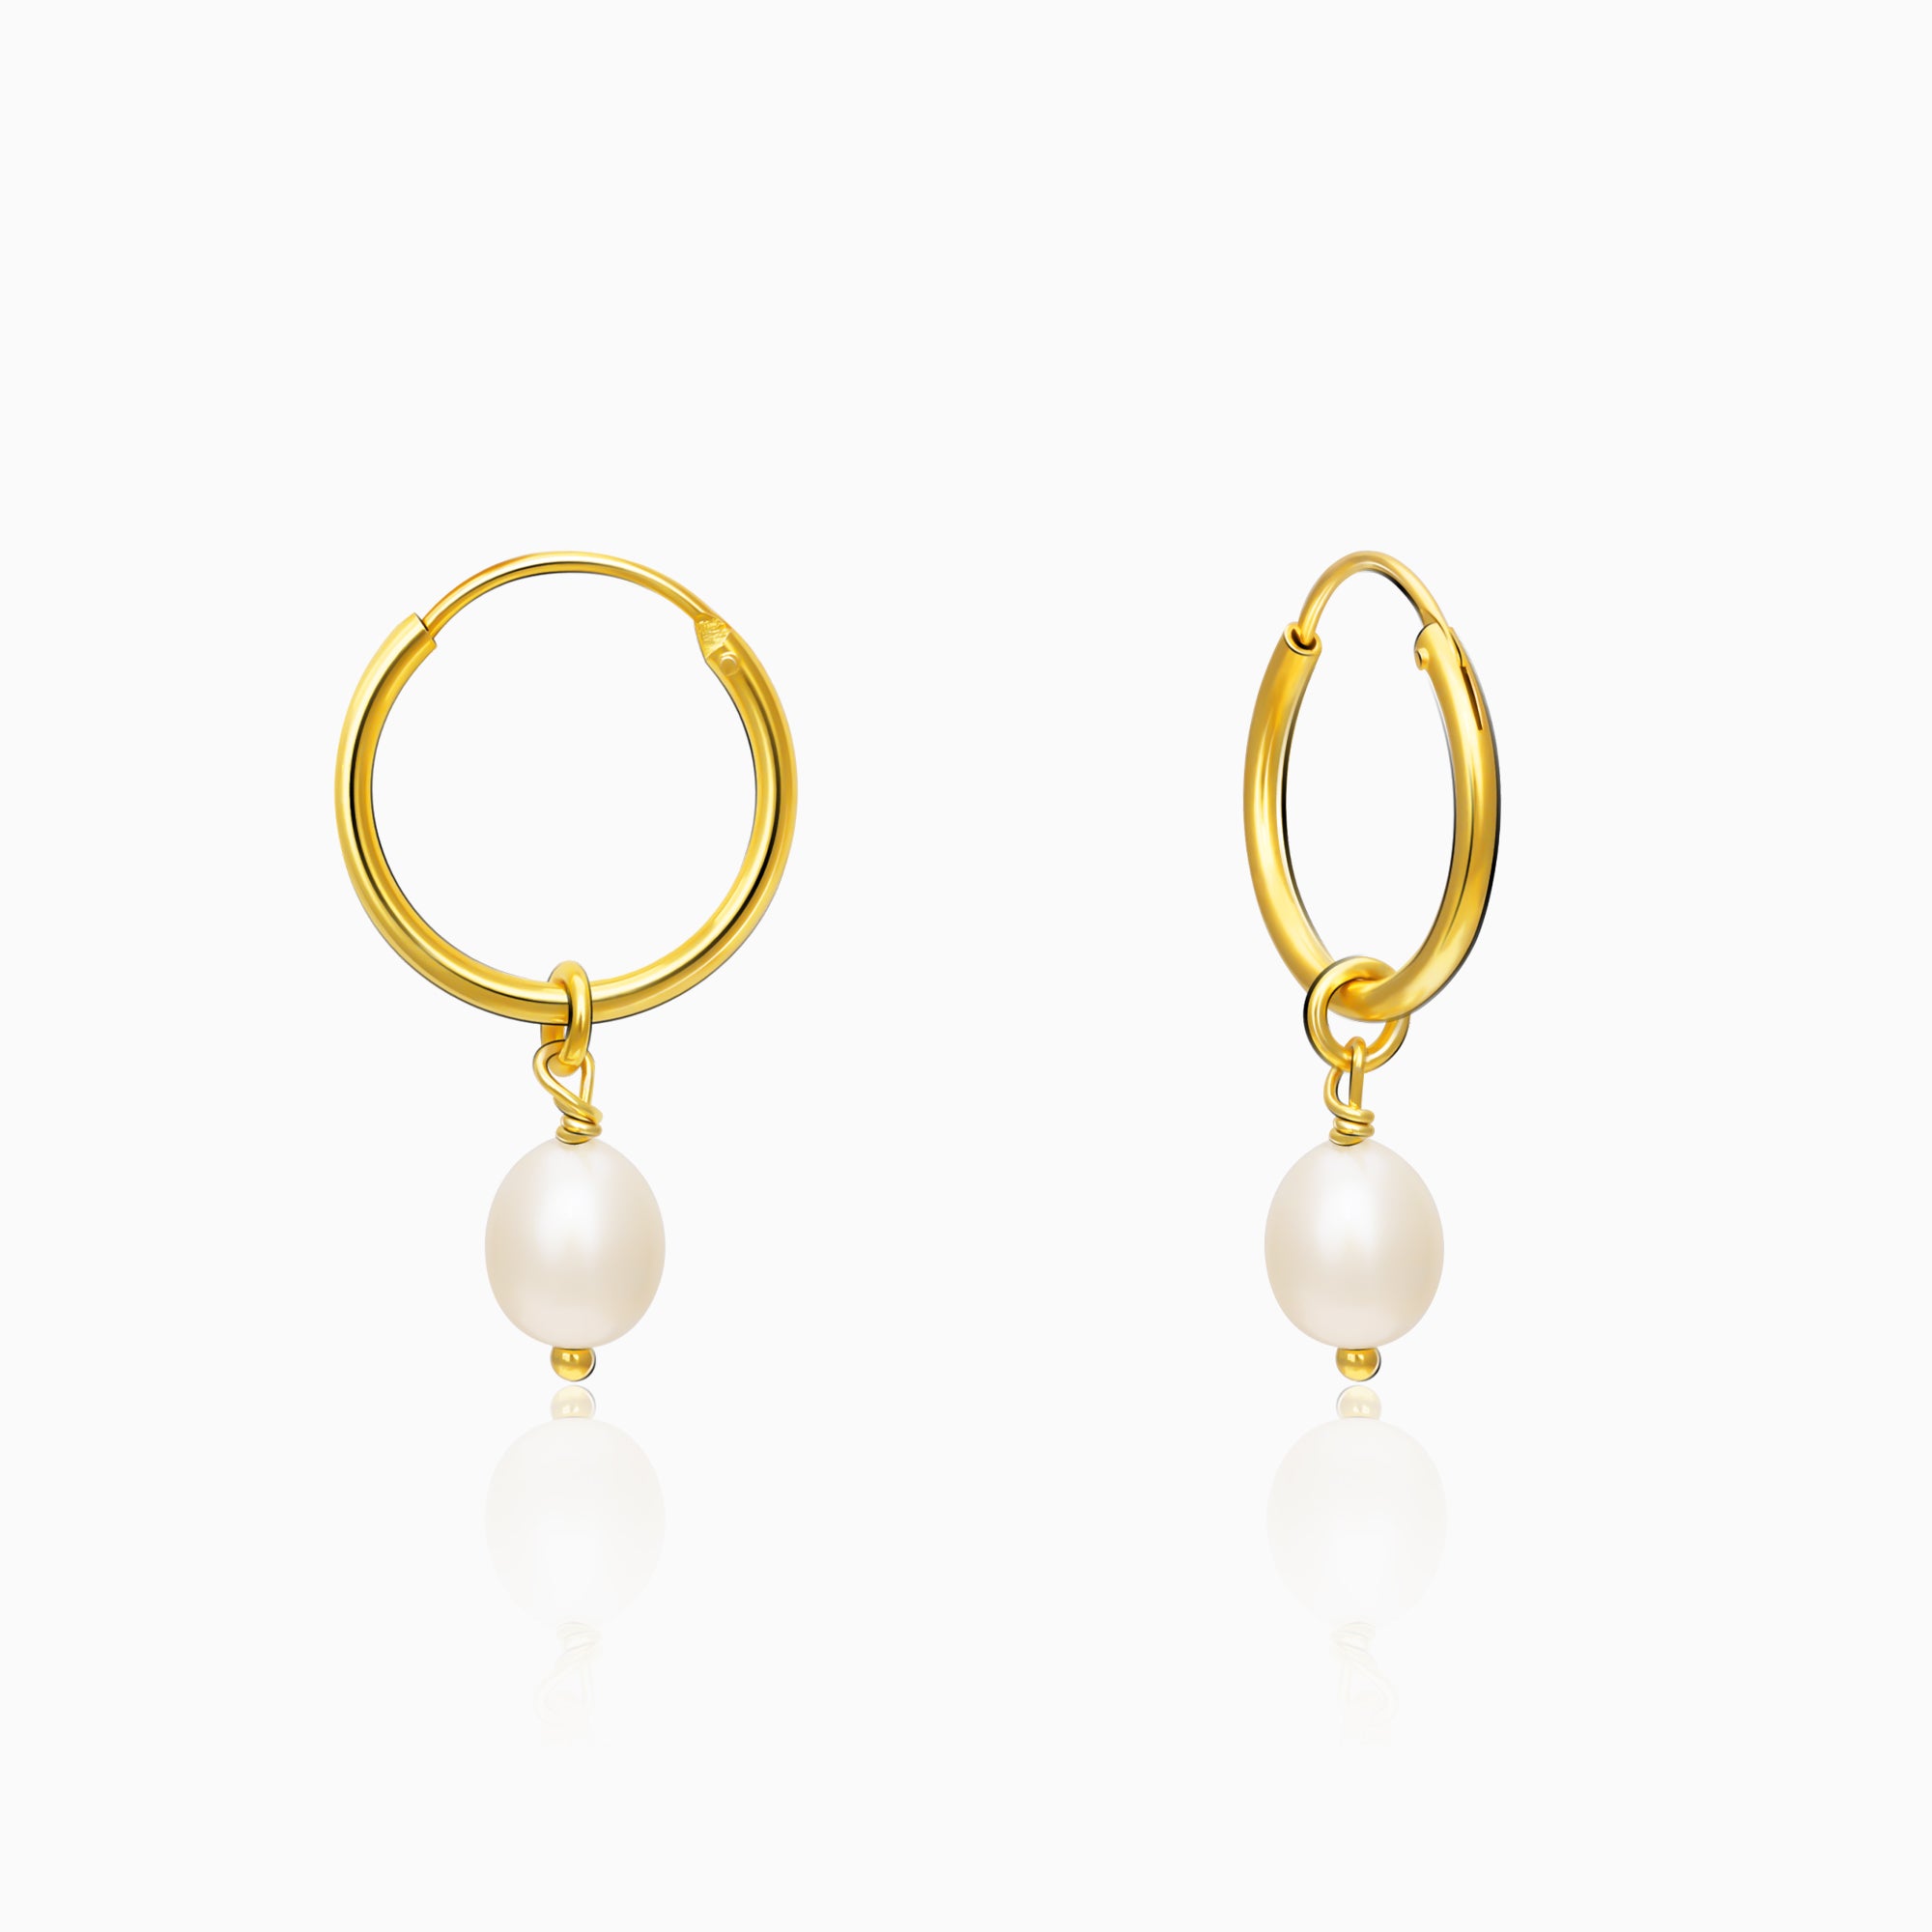 Buy Pearl Hoop Earrings, Pearl Hoops, Pearl Hoop Earrings, Wedding Jewelry,  Gold Hoop Earrings, Fresh Water Pearl Earrings, Real Pearl Earrings Online  in India - Etsy